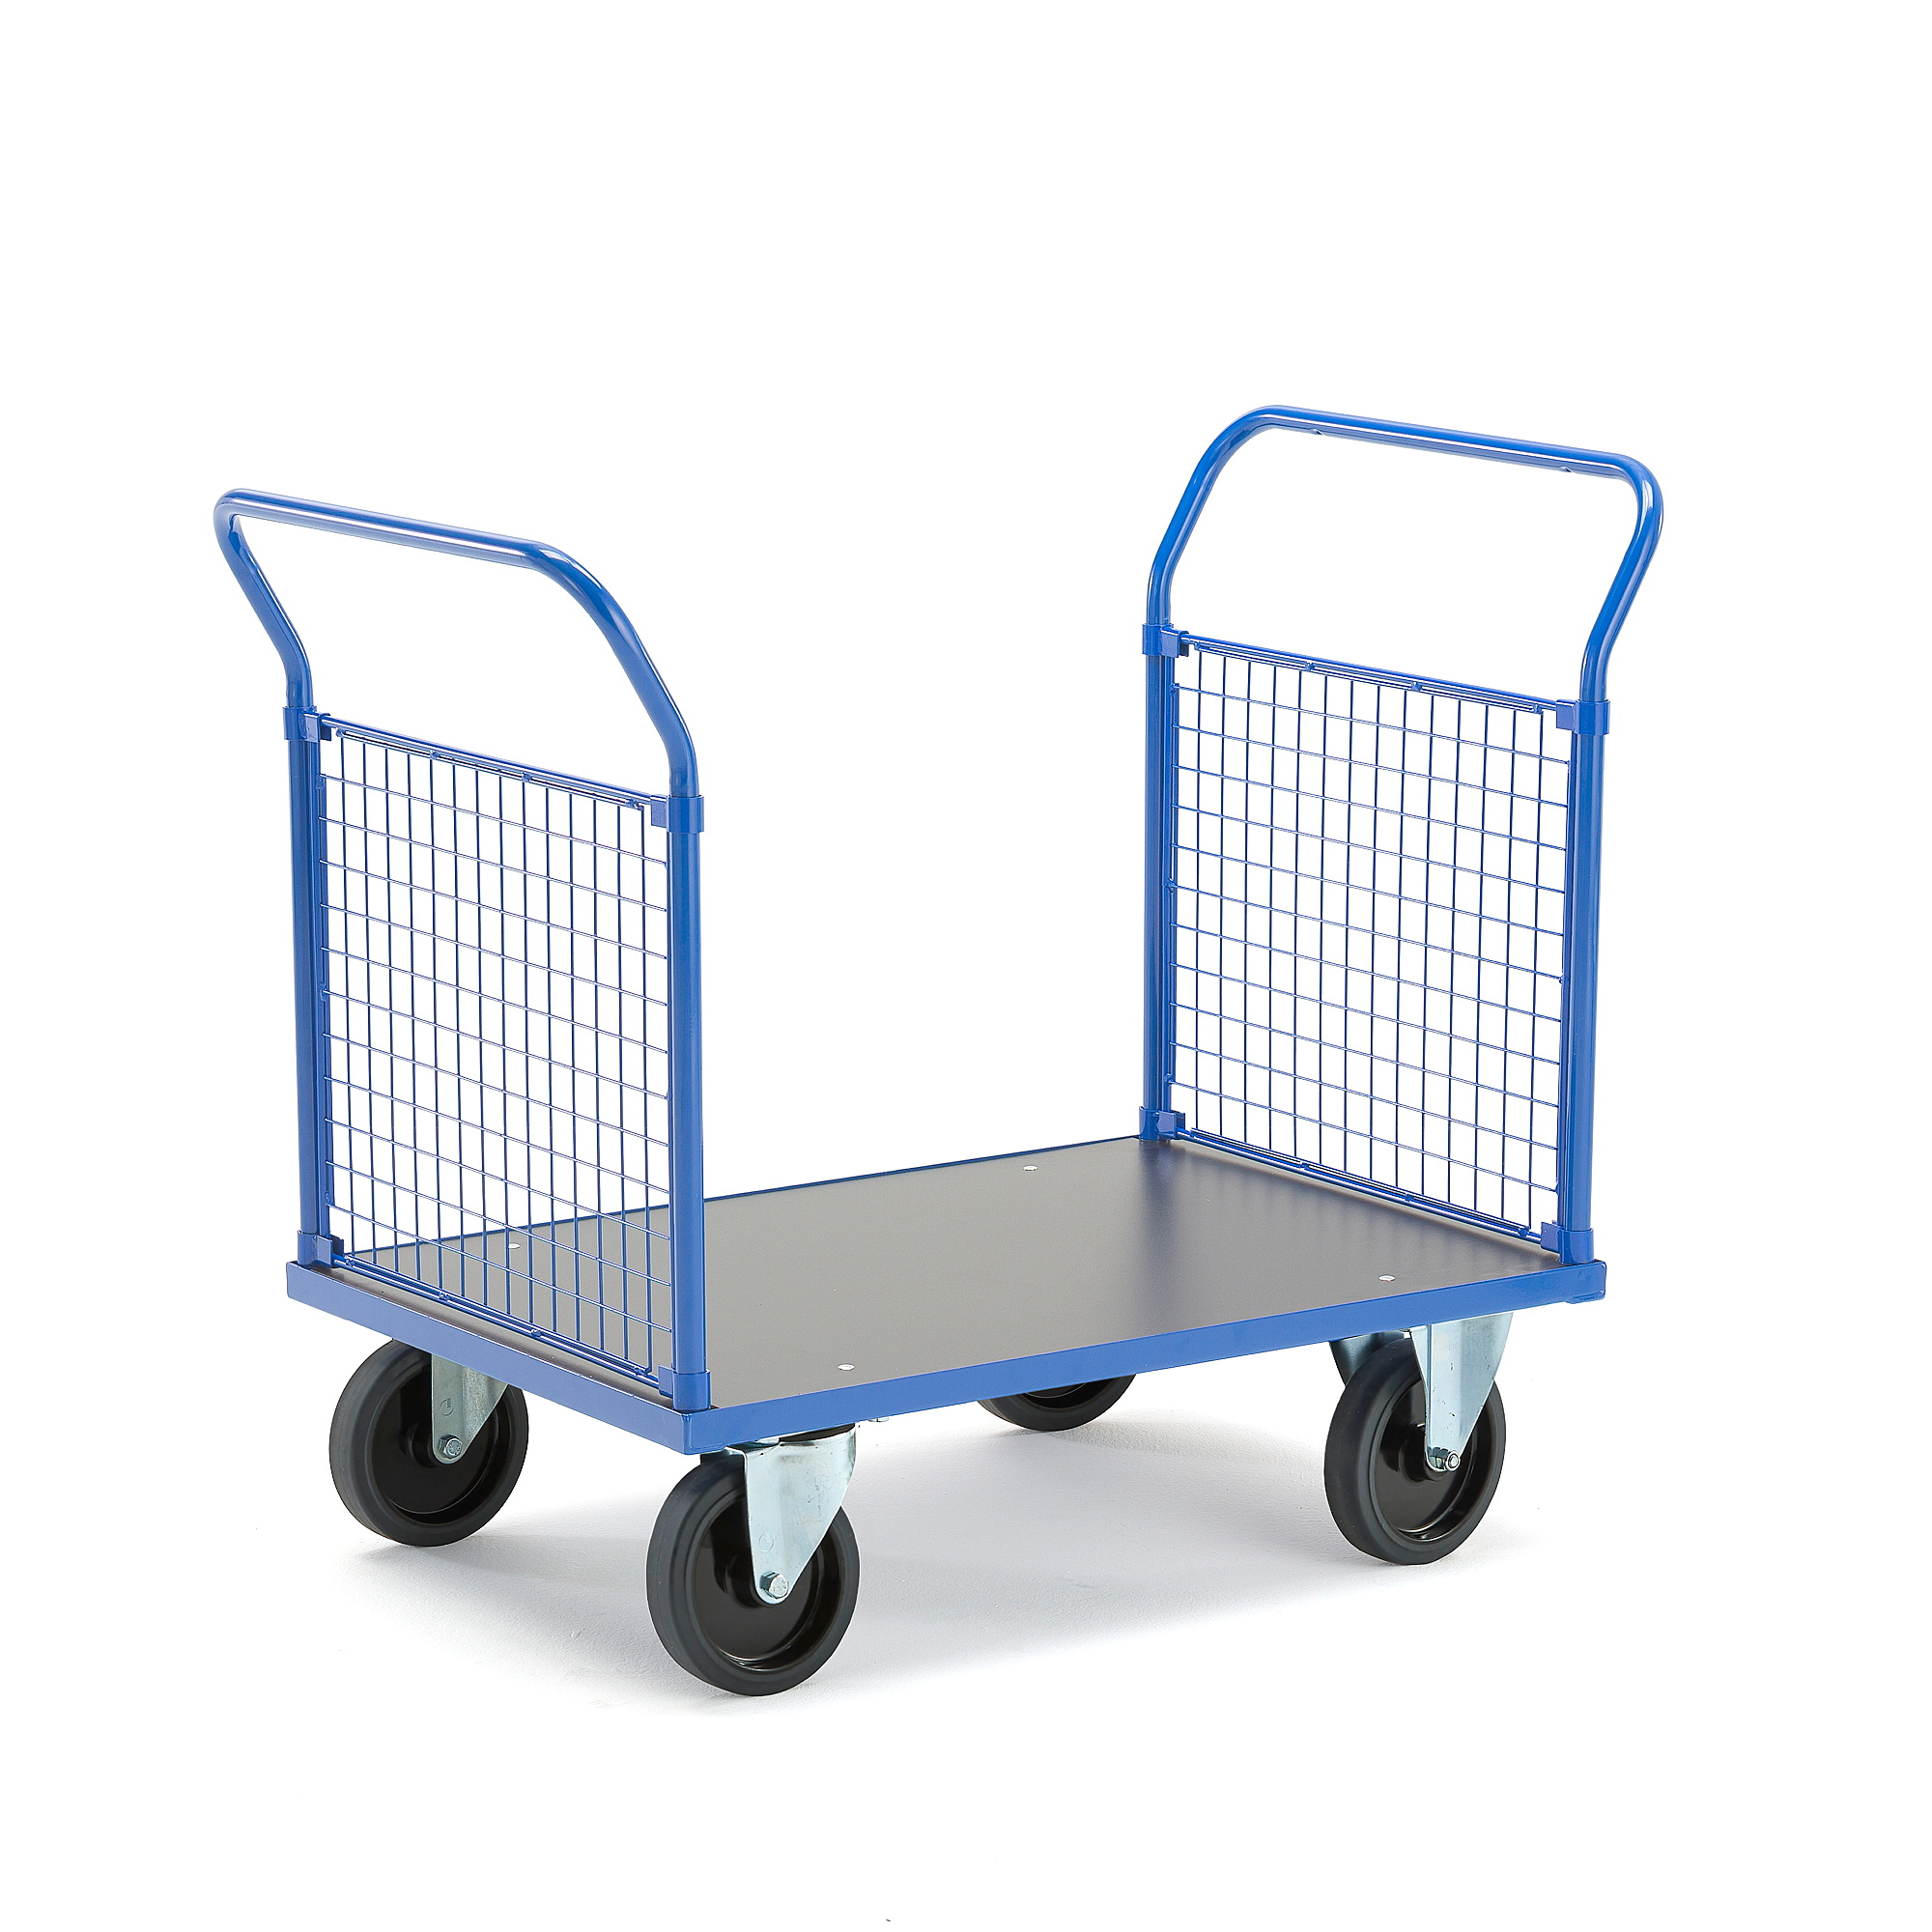 Plošinový vozík TRANSFER, 2 čelní drátěné stěny, 1000x700 mm, 1000 kg, elastická gumová kola, bez br